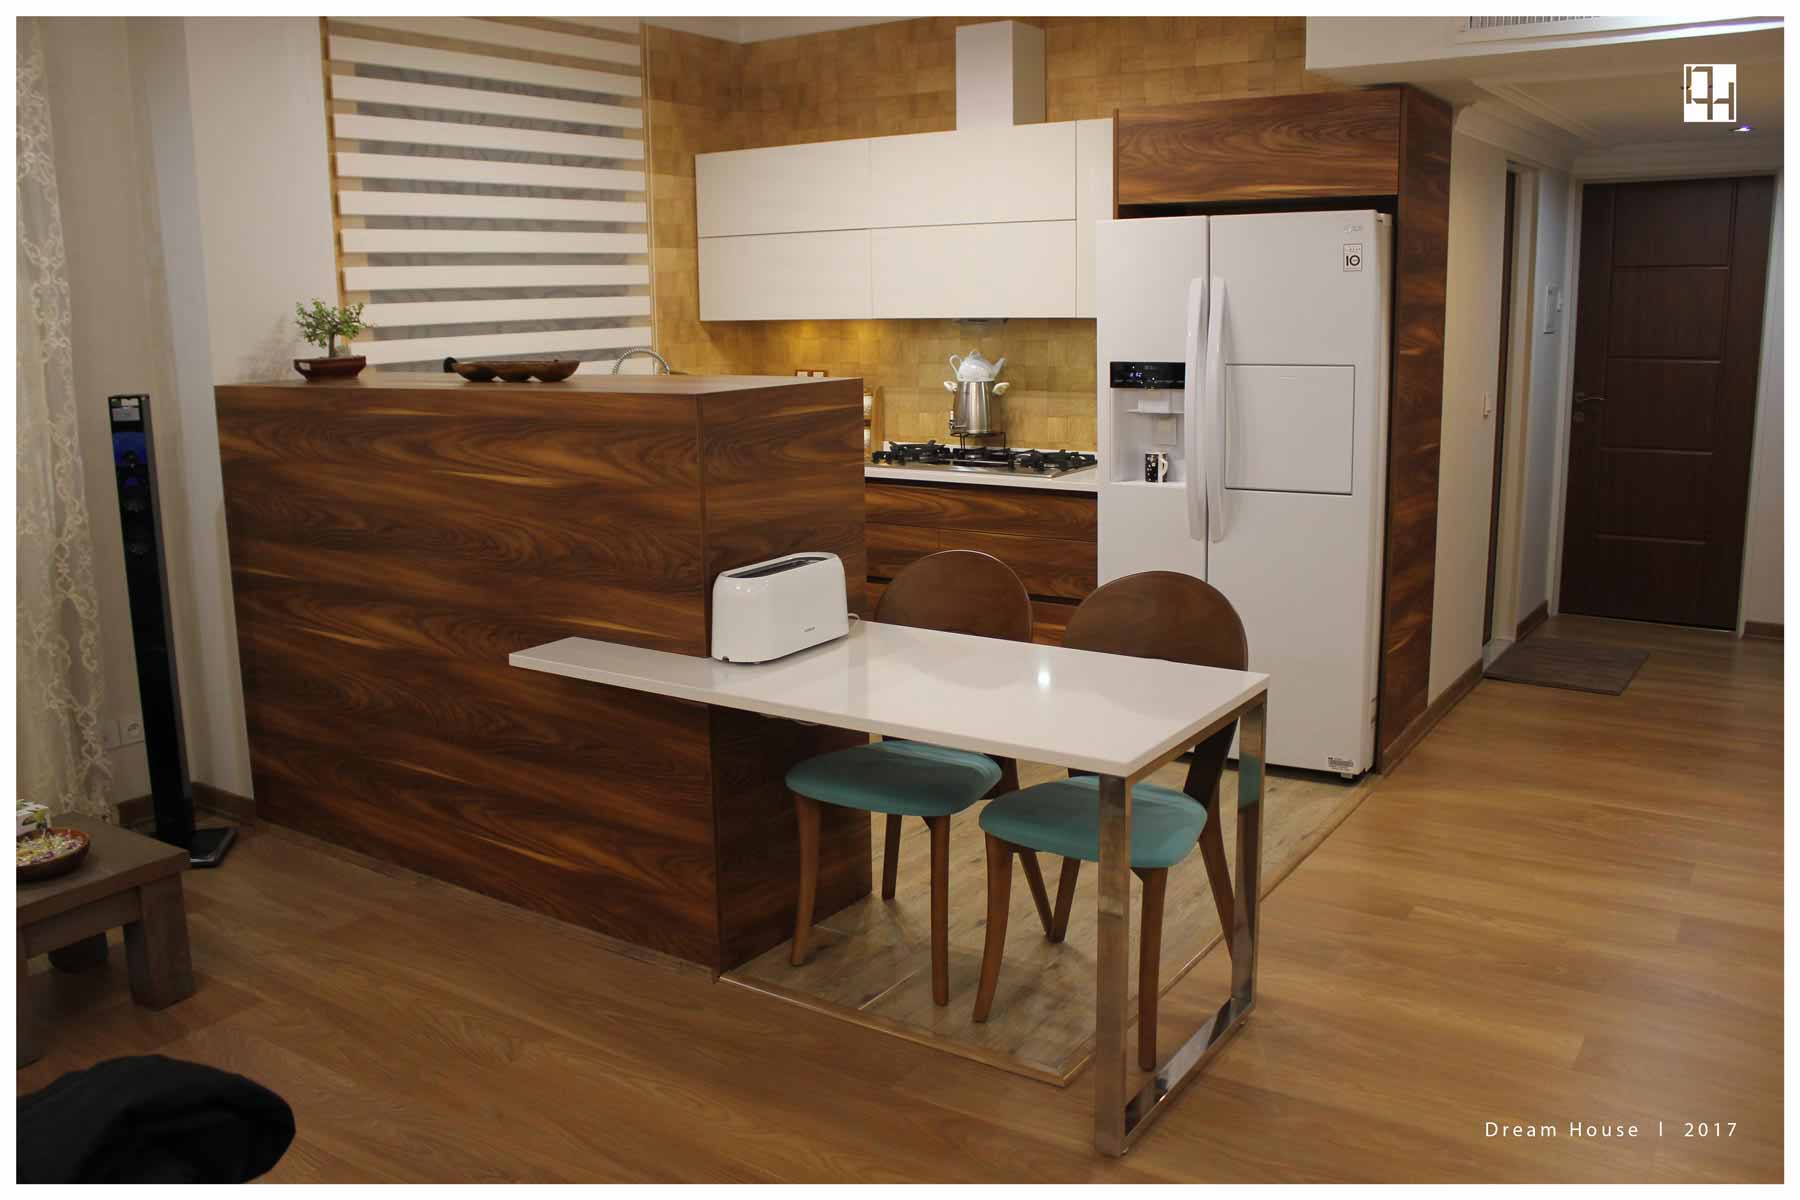  طراحی کابینت آشپزخانه